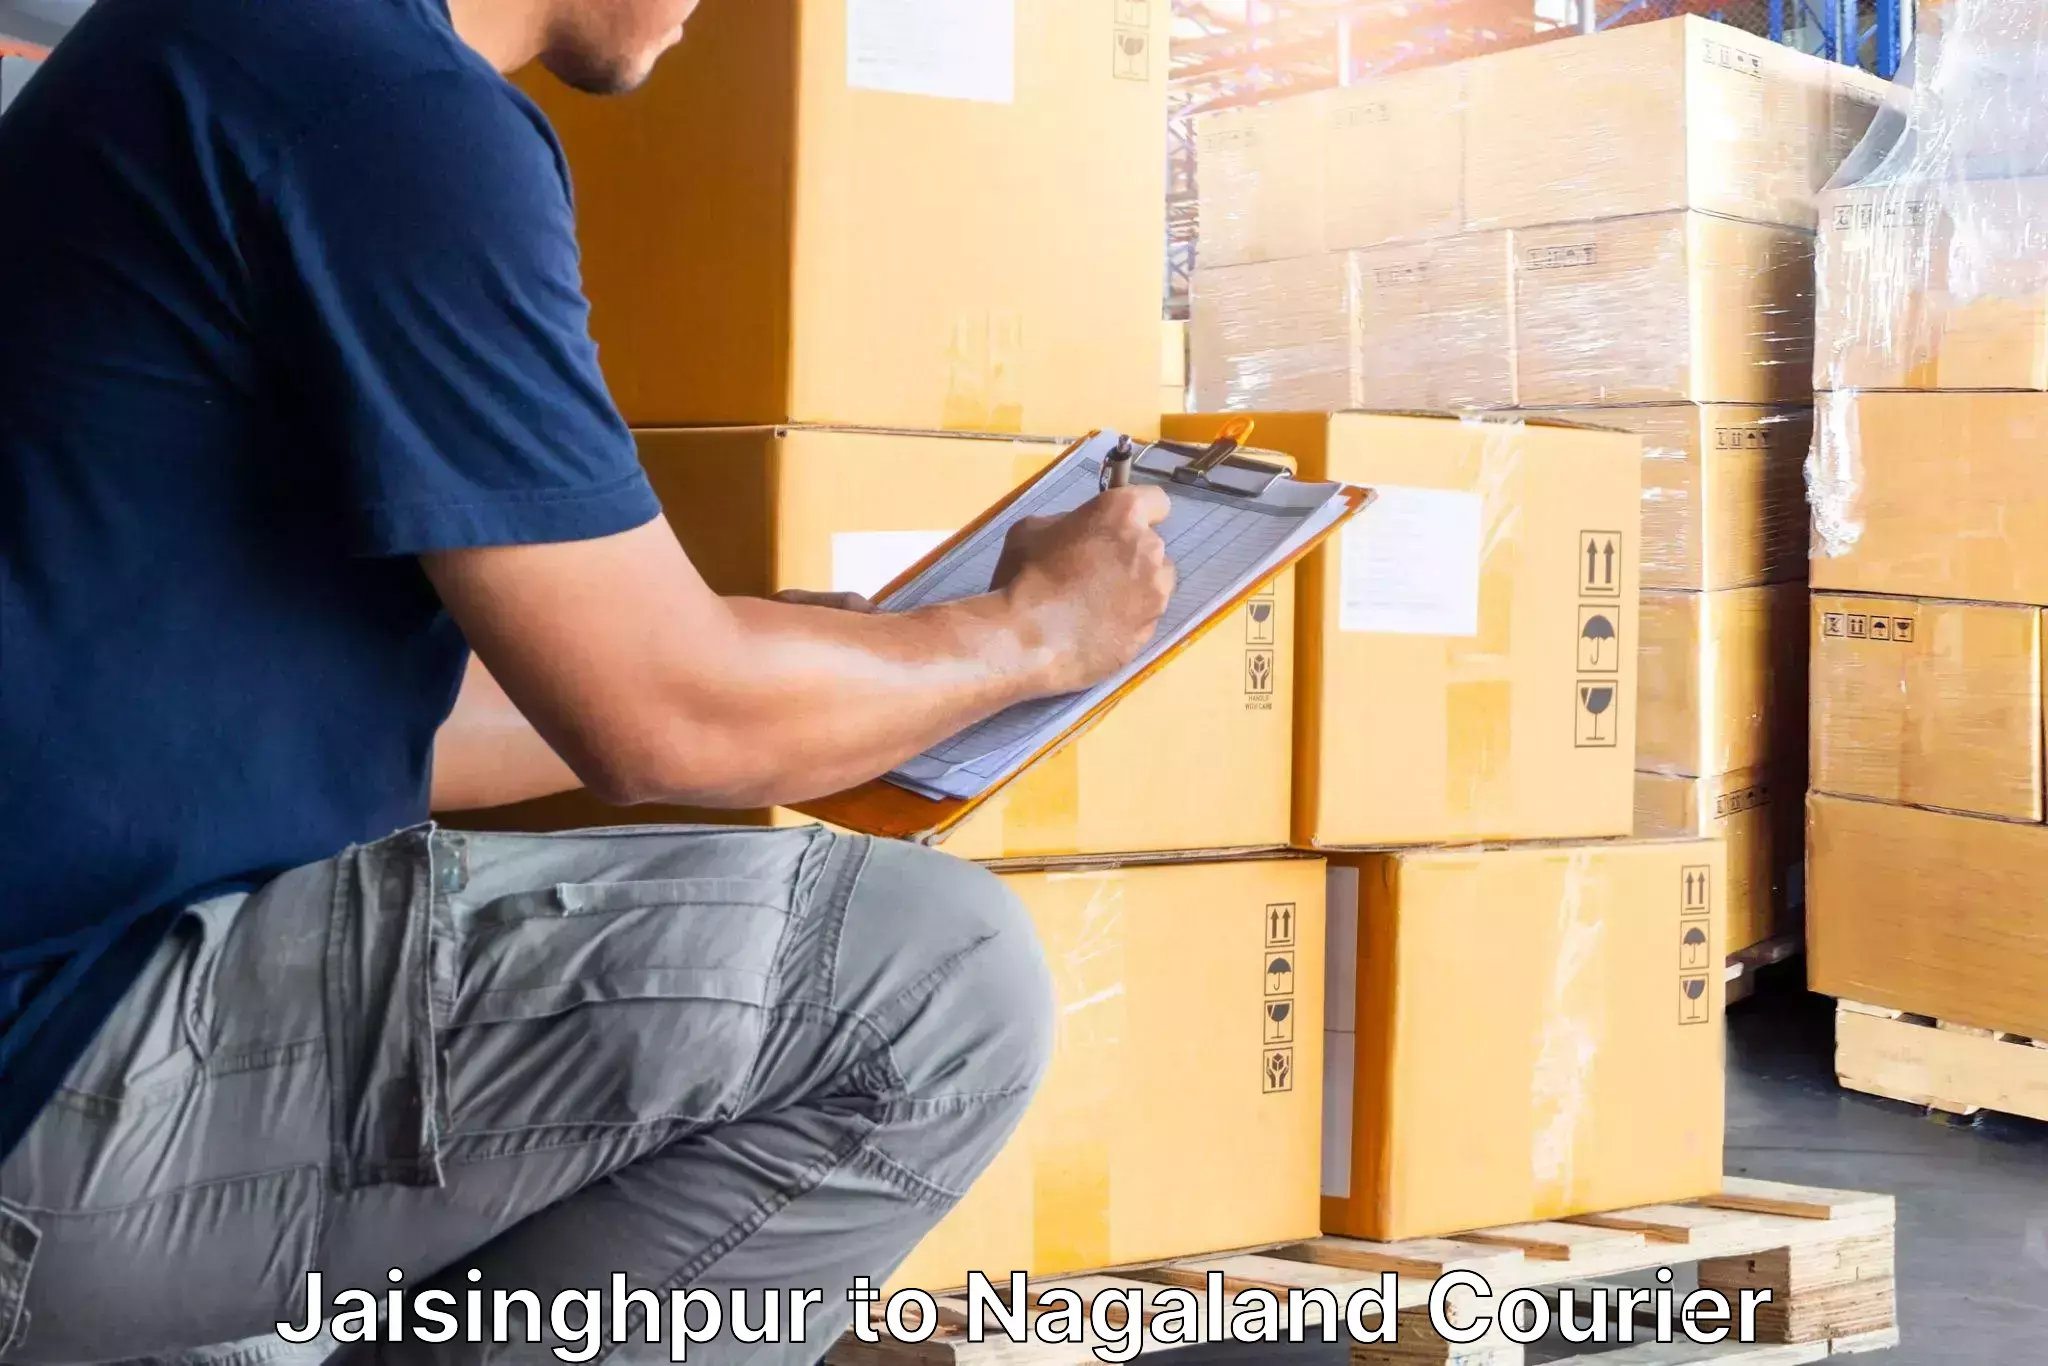 Trusted moving company Jaisinghpur to Nagaland